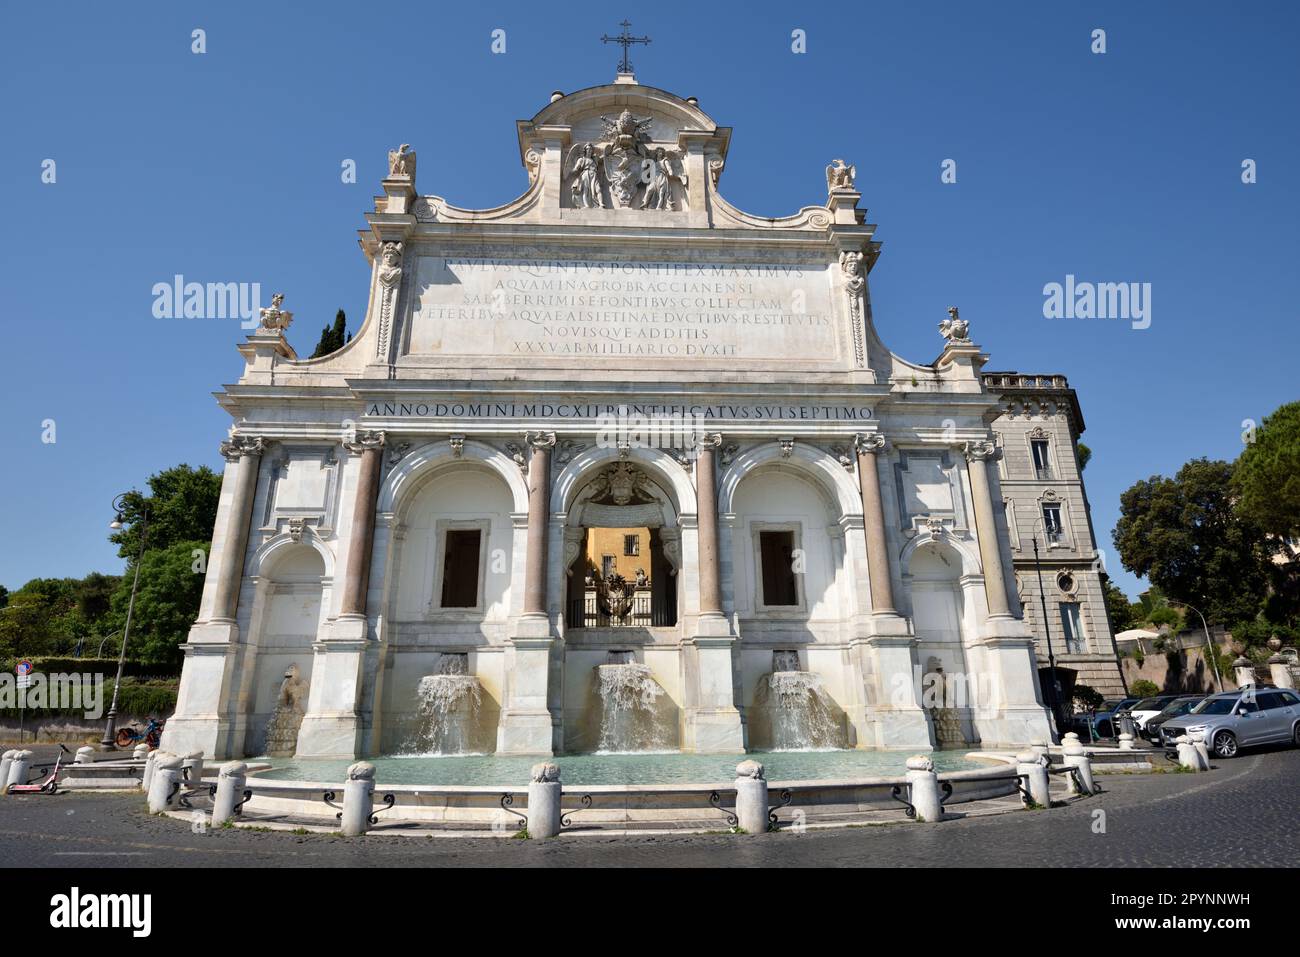 fontana dell'acqua paola, gianicolo, rom, italien Stockfoto